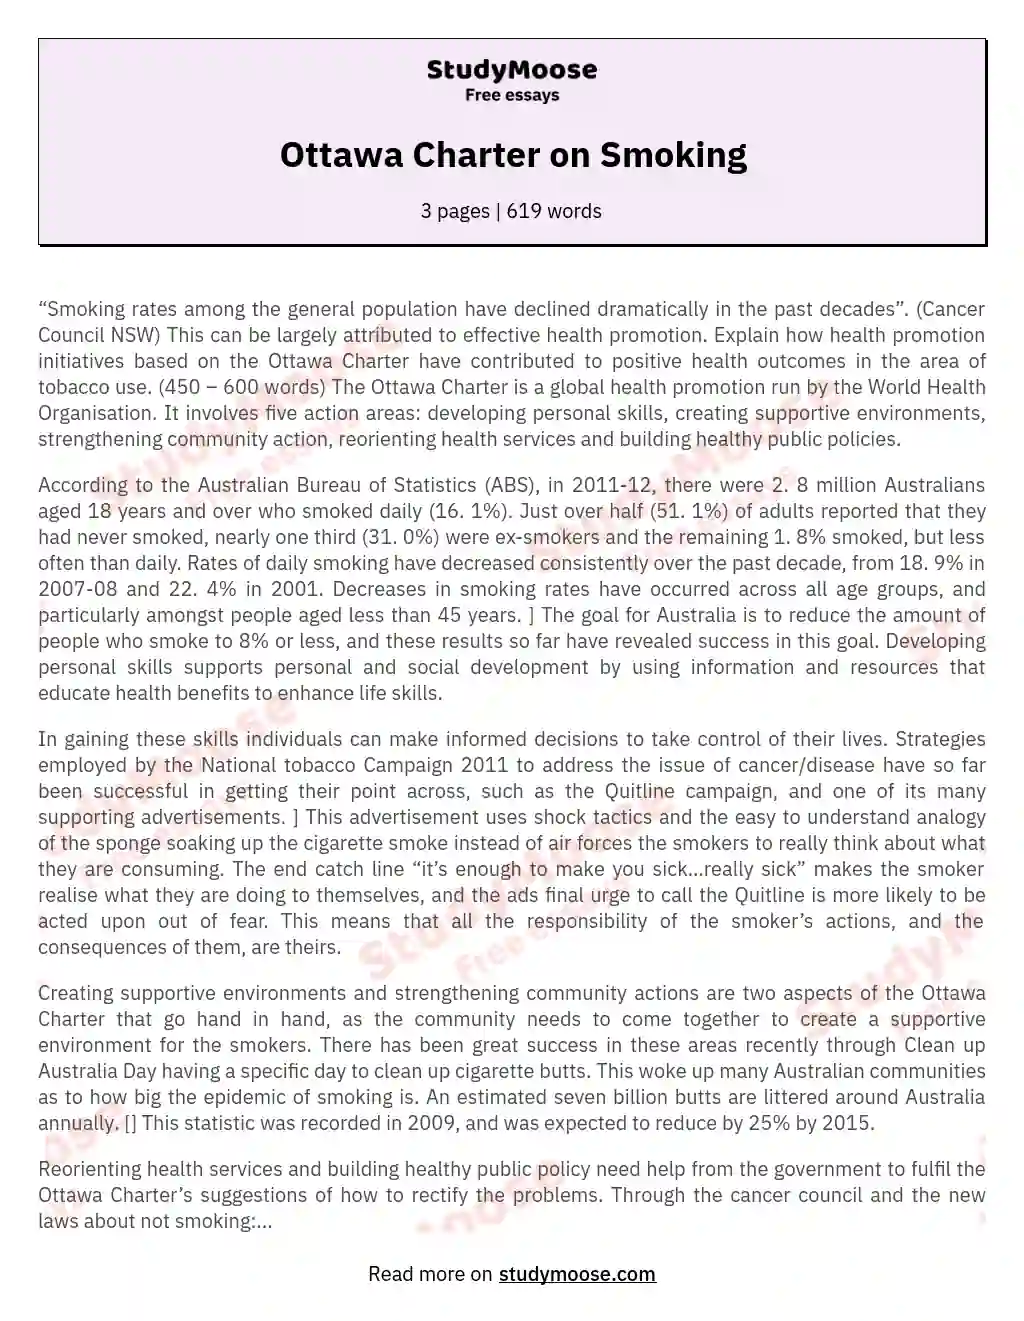 Ottawa Charter on Smoking essay